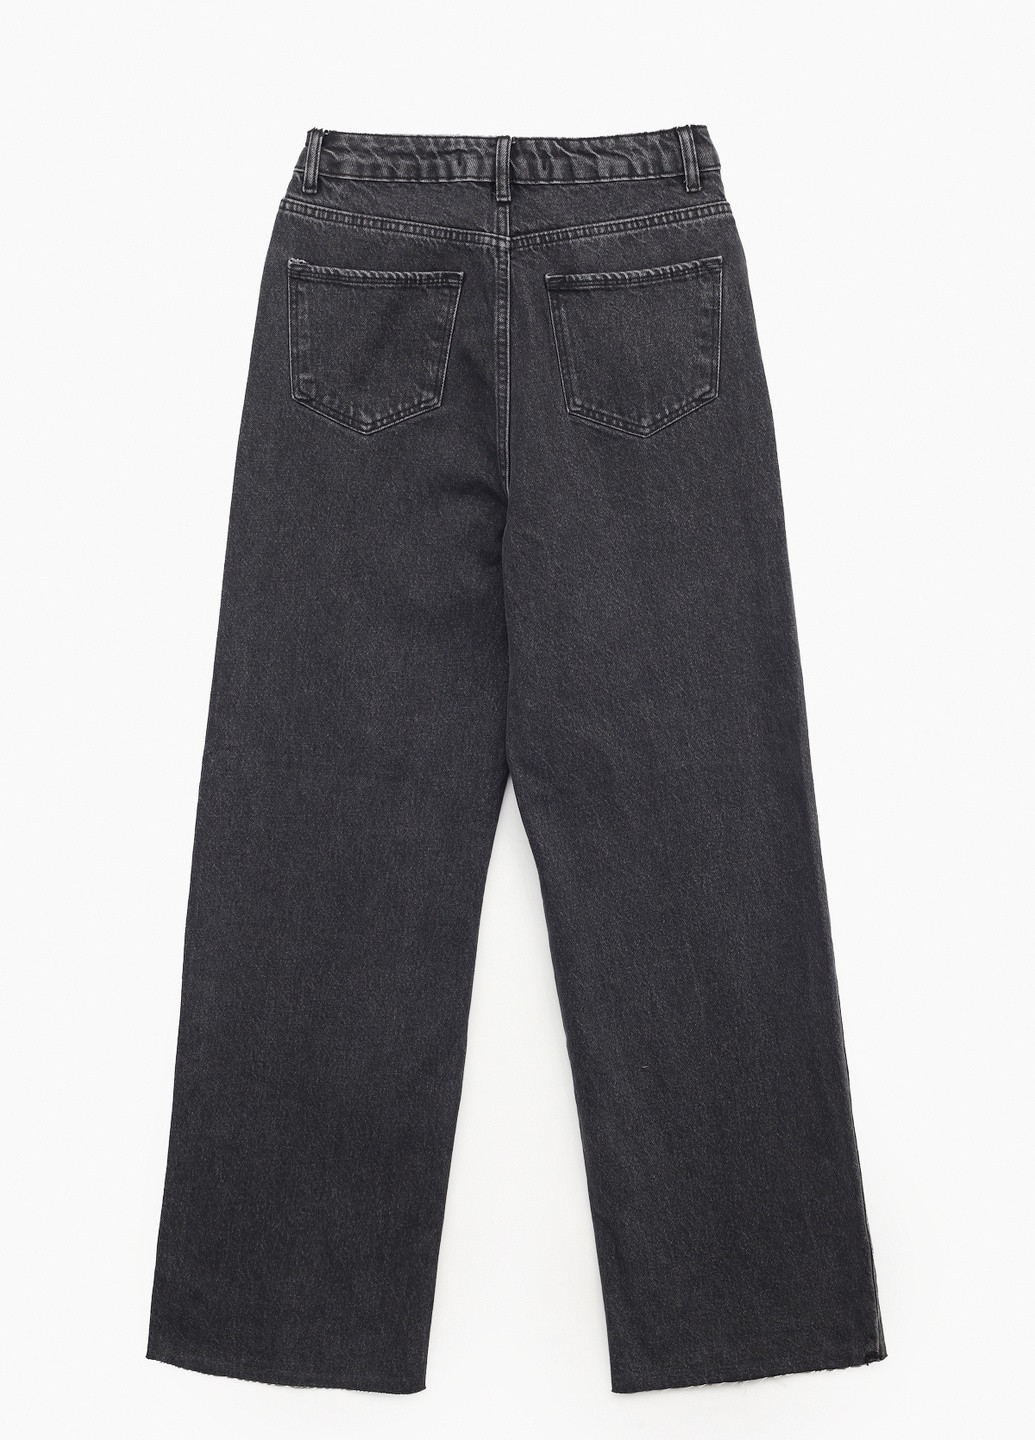 Темно-серые демисезонные джинсы Zeo Basic